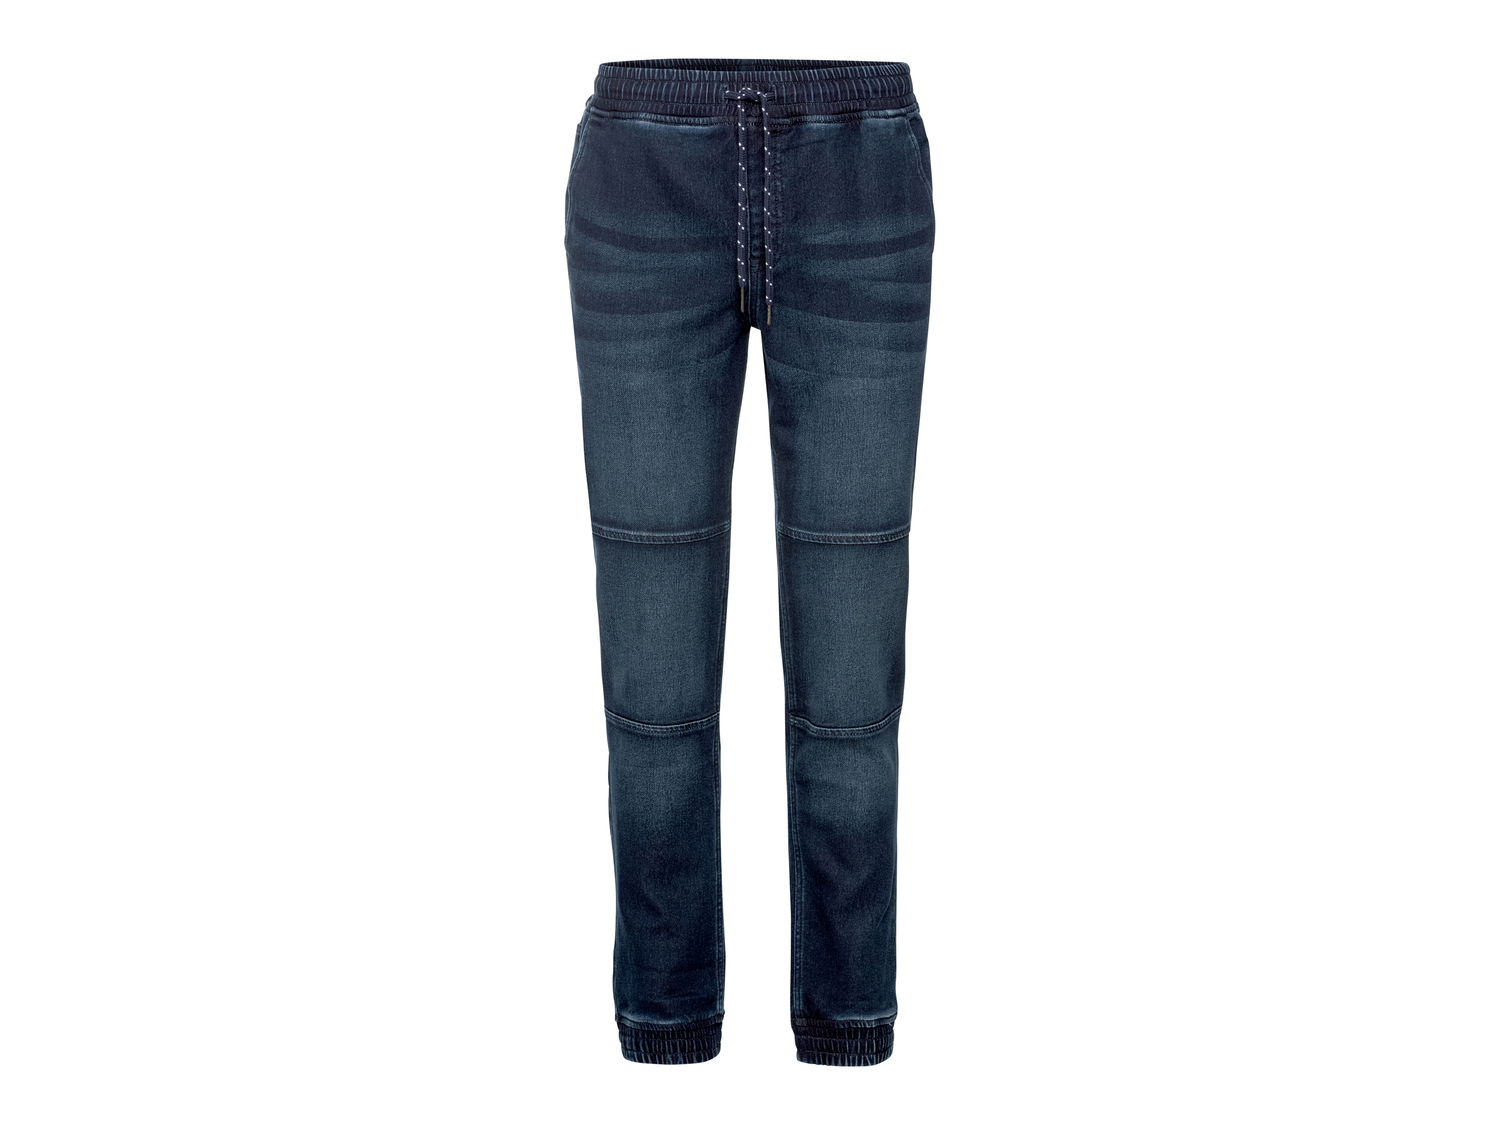 Joggers in jeans da uomo Livergy, prezzo 11.99 &#8364; 
Misure: 46-54
Taglie ...